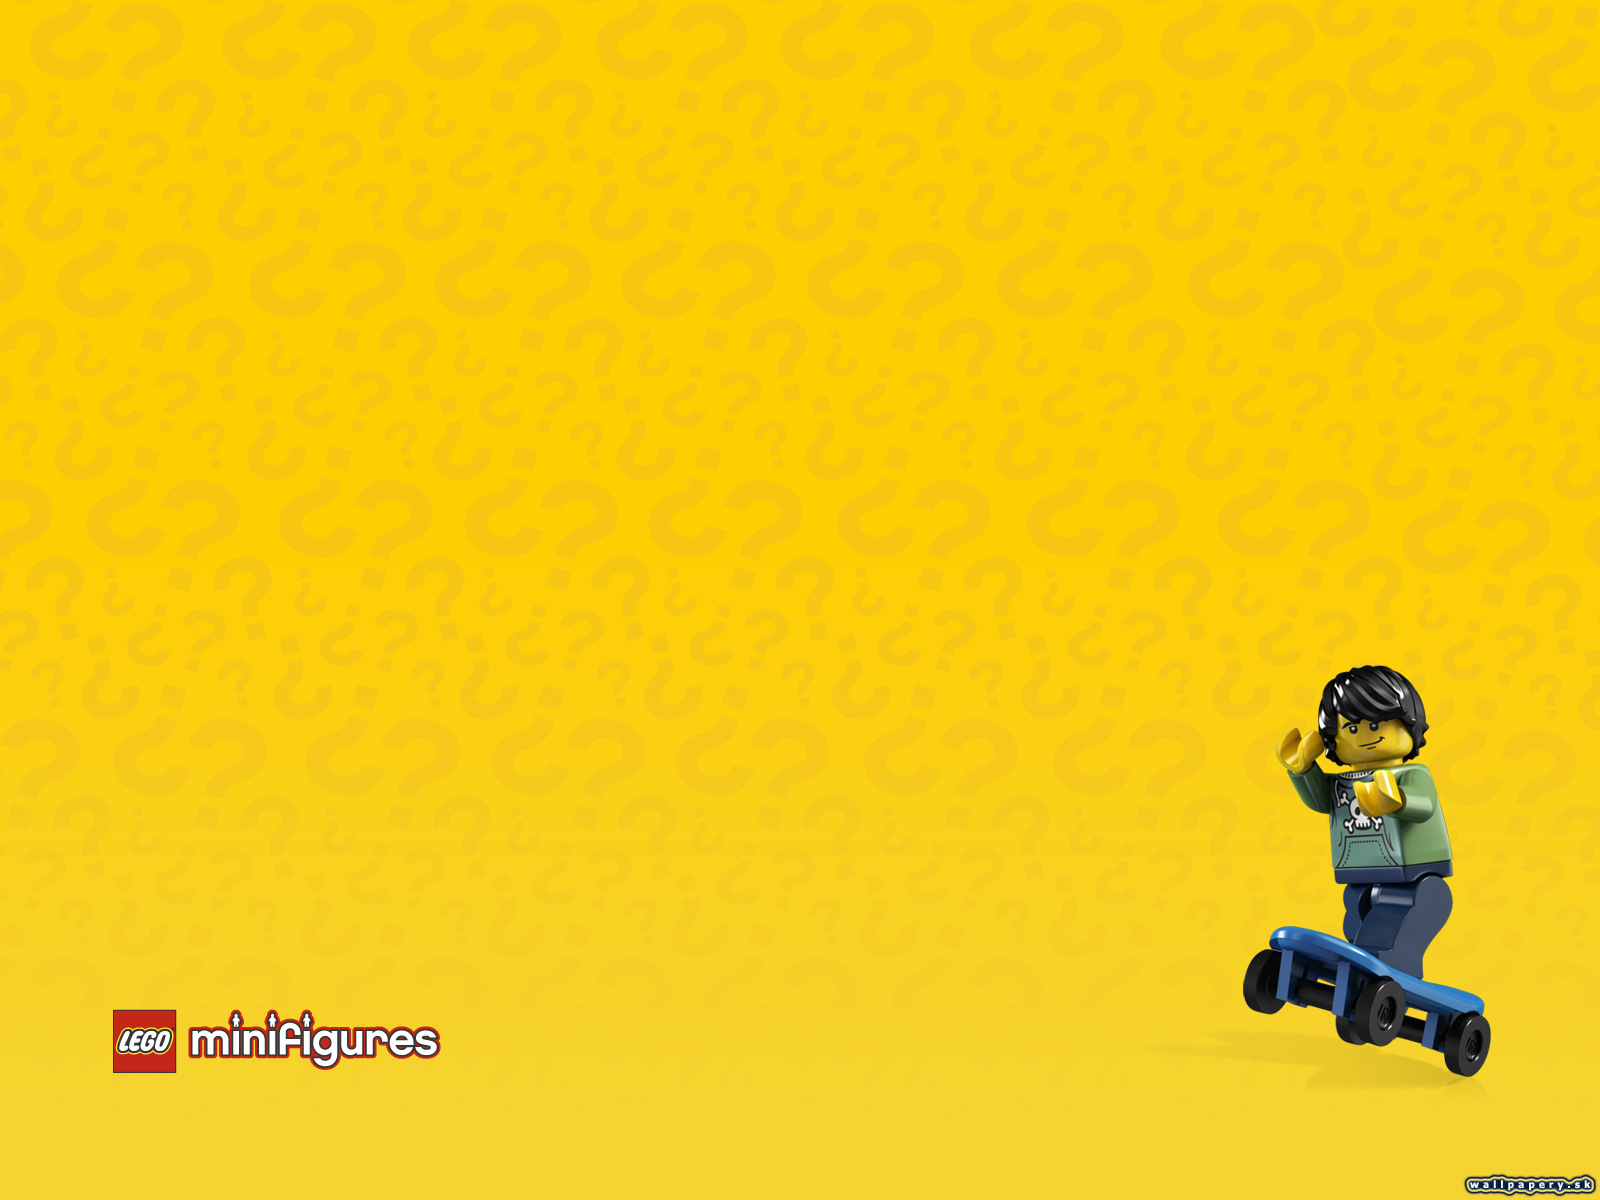 LEGO Minifigures Online - wallpaper 44